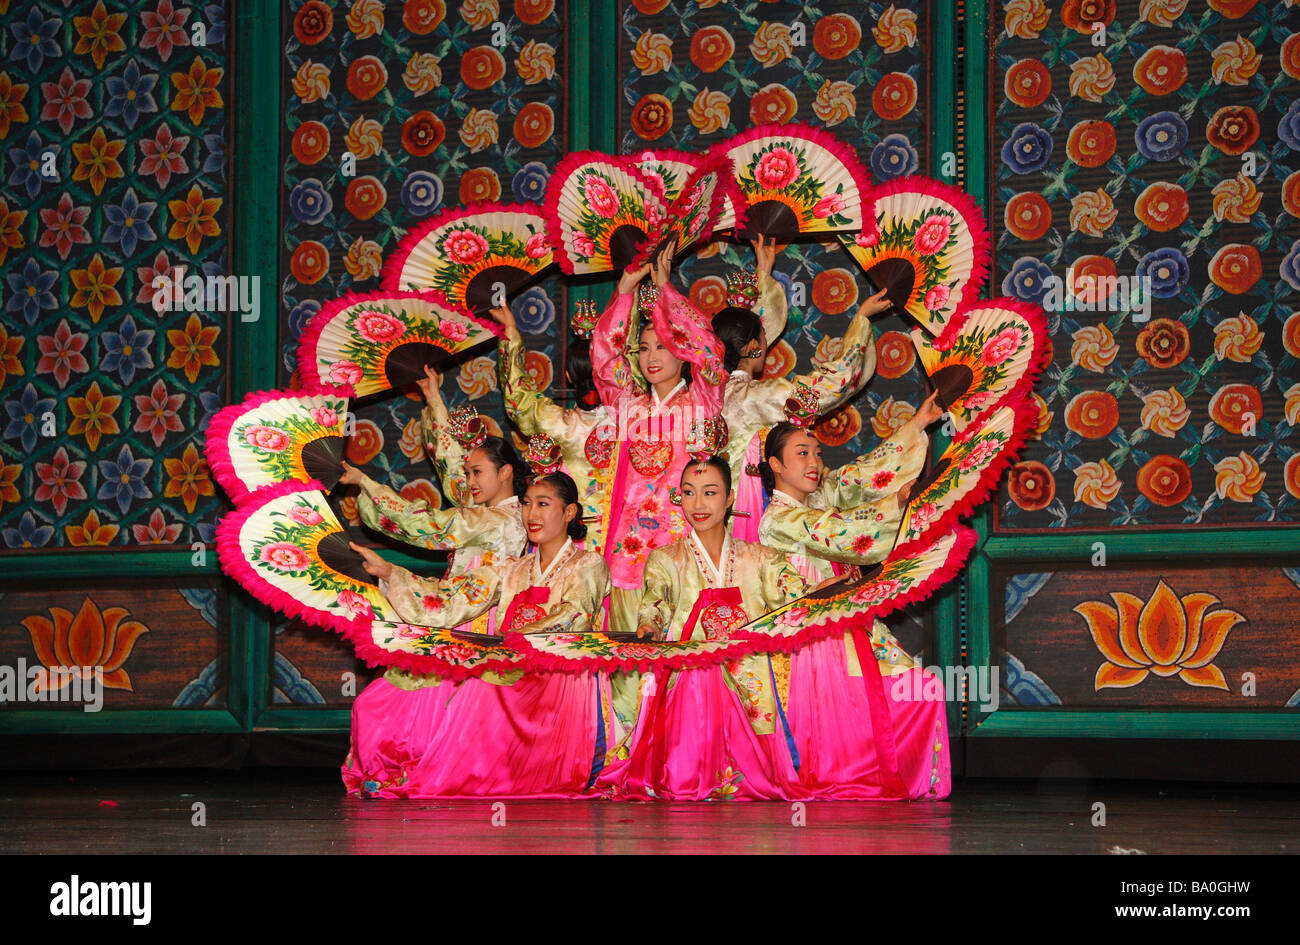 Eine Gruppe von koreanischen Tänzerinnen traditionellen Volkstanz auf der Bühne in einer Formation, die Form einer Blume ähnelt Stockfoto